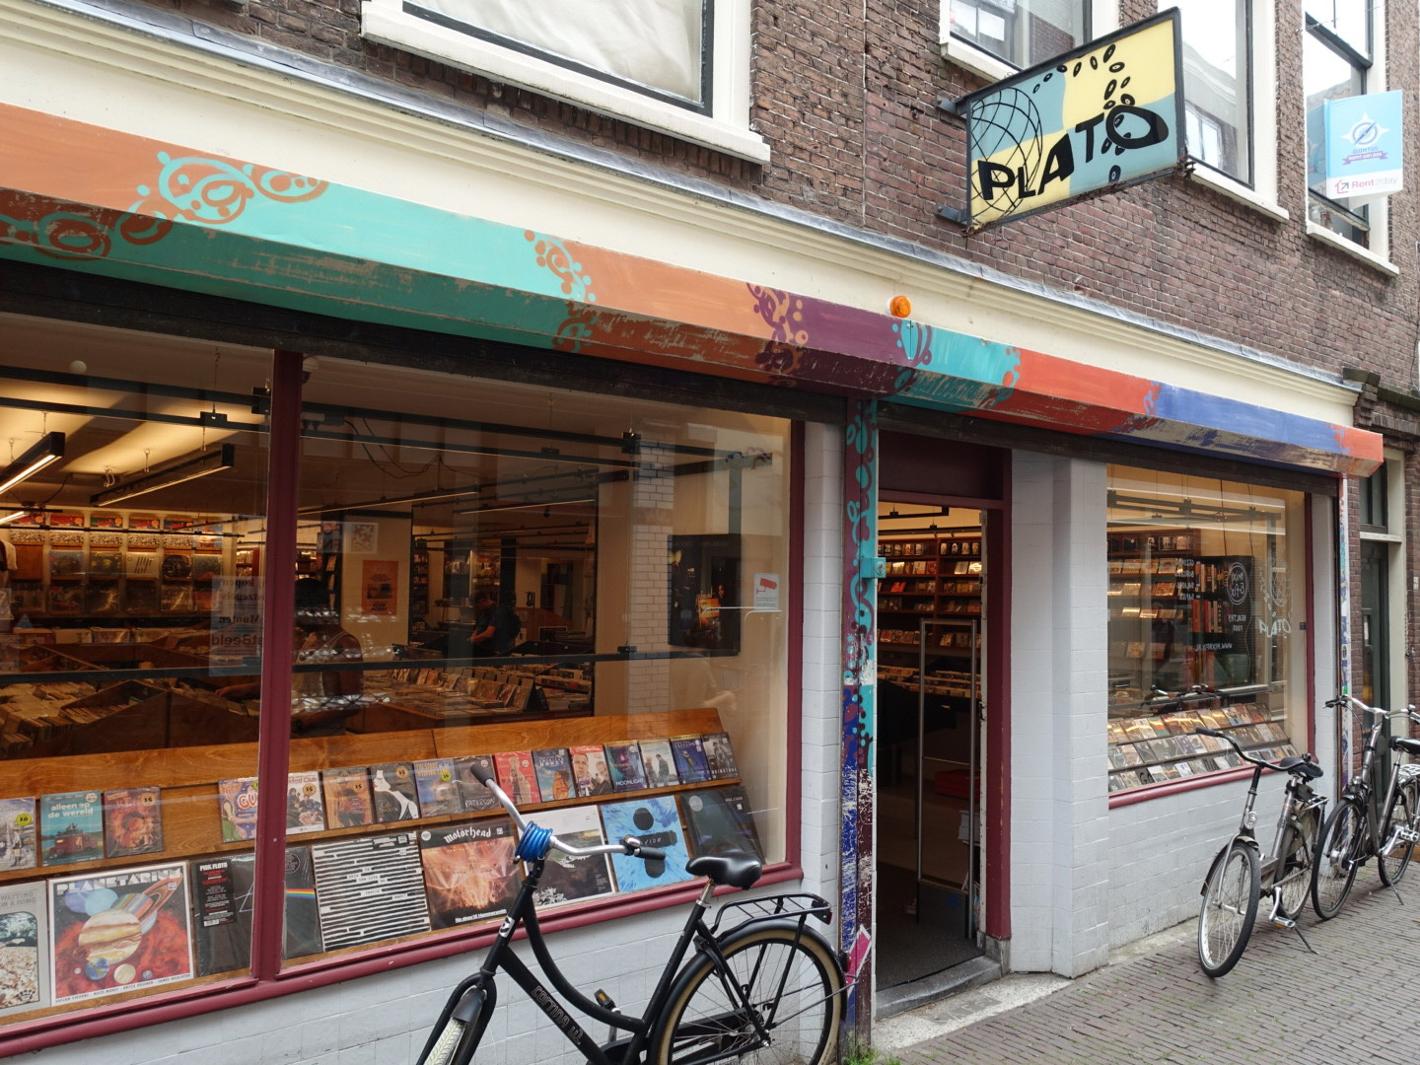 Foto Plato Leiden in Leiden, Winkelen, Hobby & vrije tijd - #1